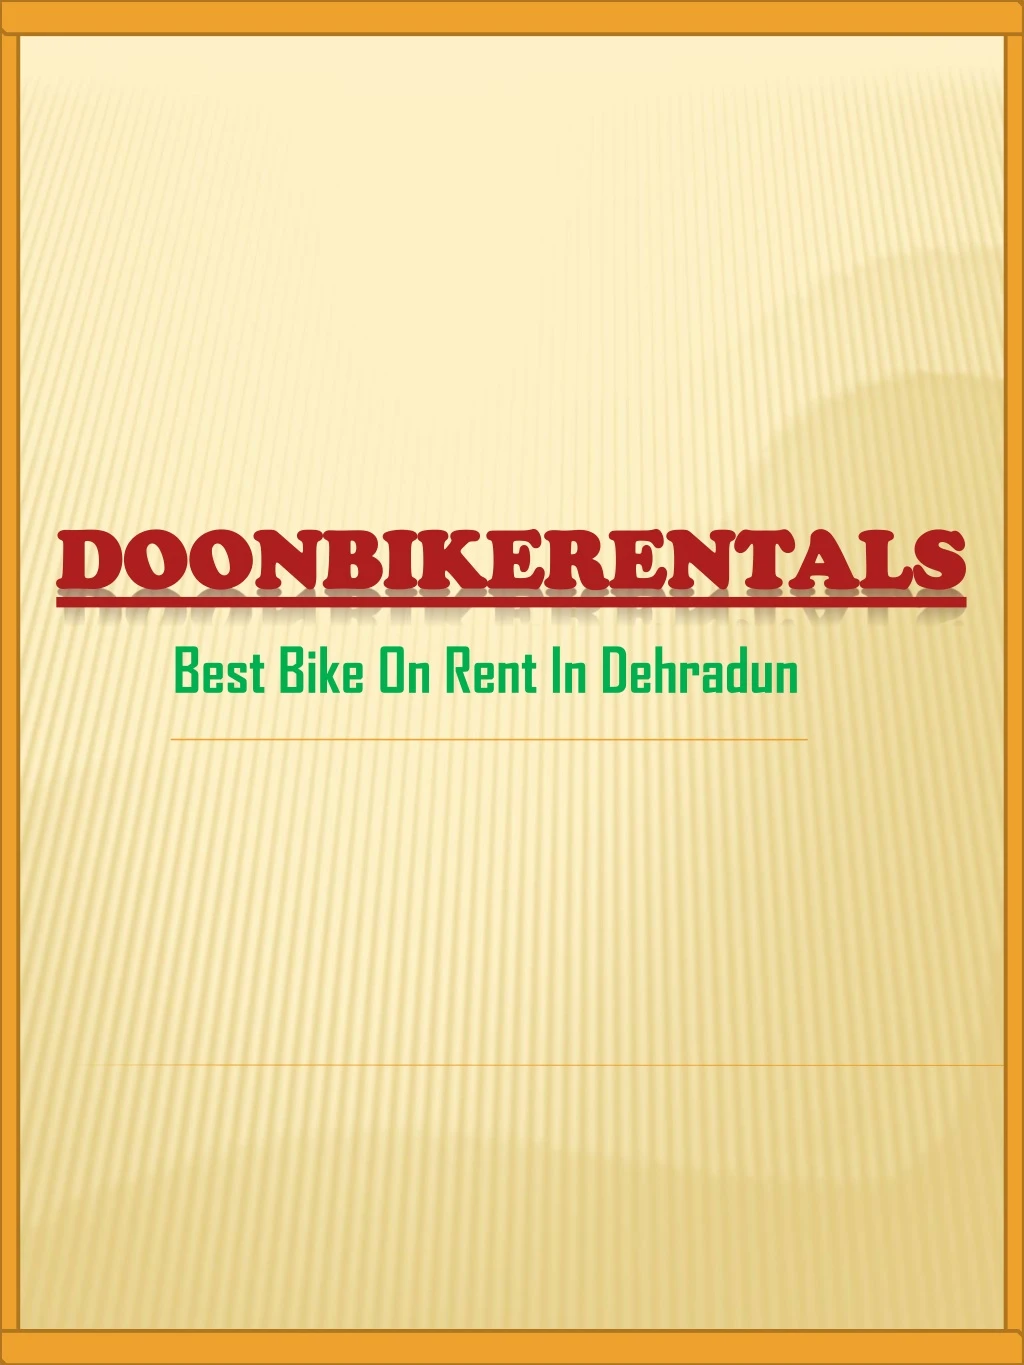 doonbikerentals doonbikerentals best bike on rent